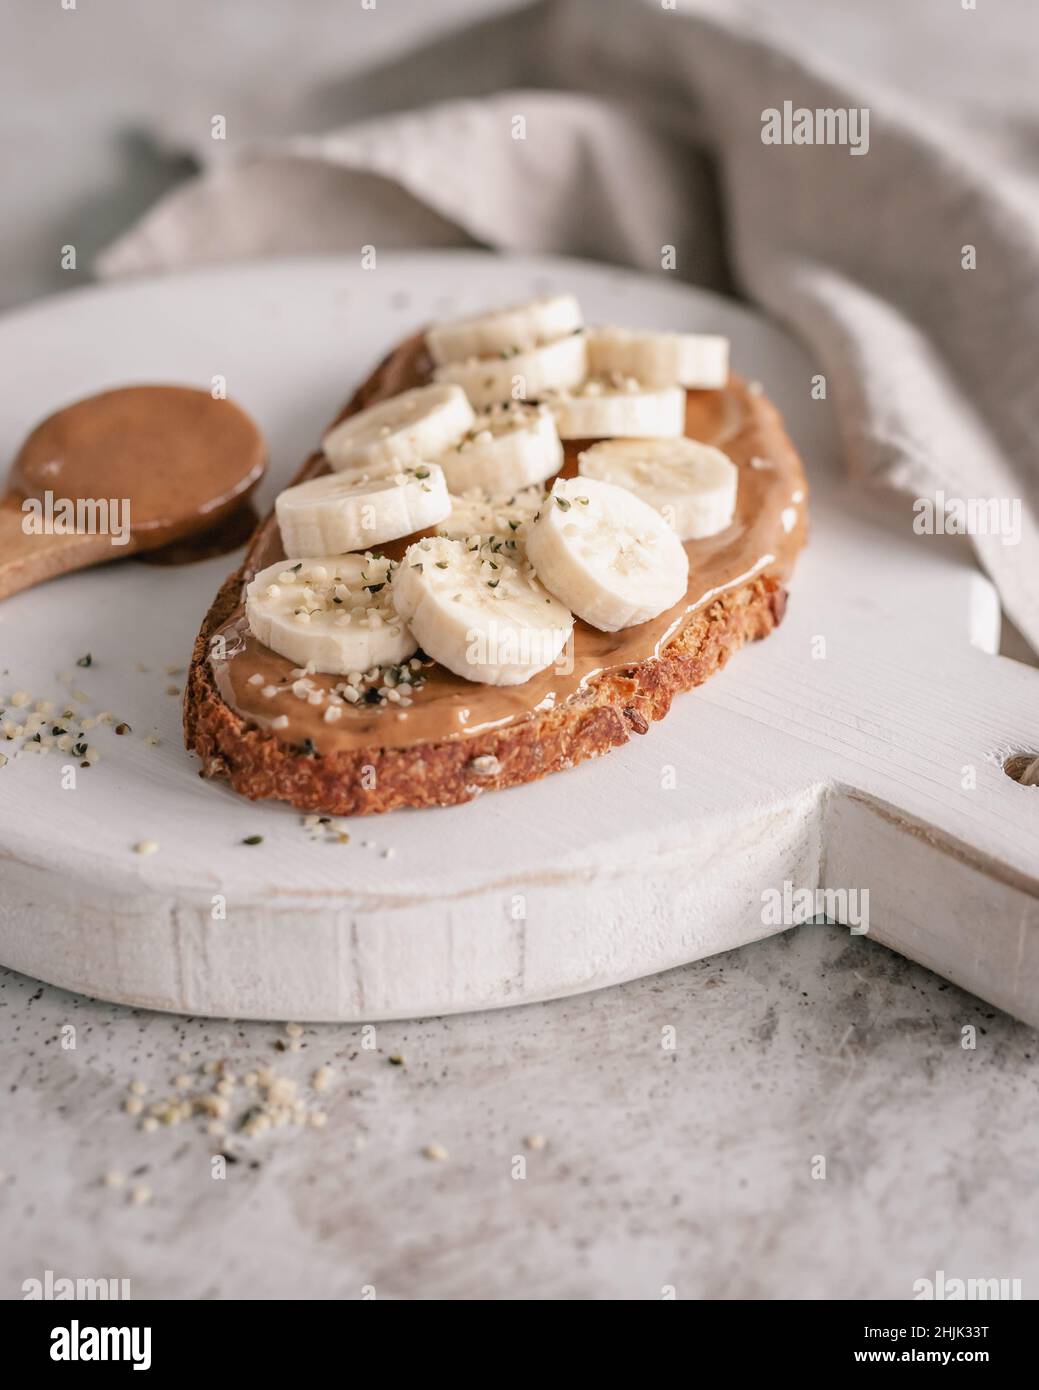 Affettare il pane di pasta madre con burro di arachidi, banana e semi di canapa su un tagliere Foto Stock